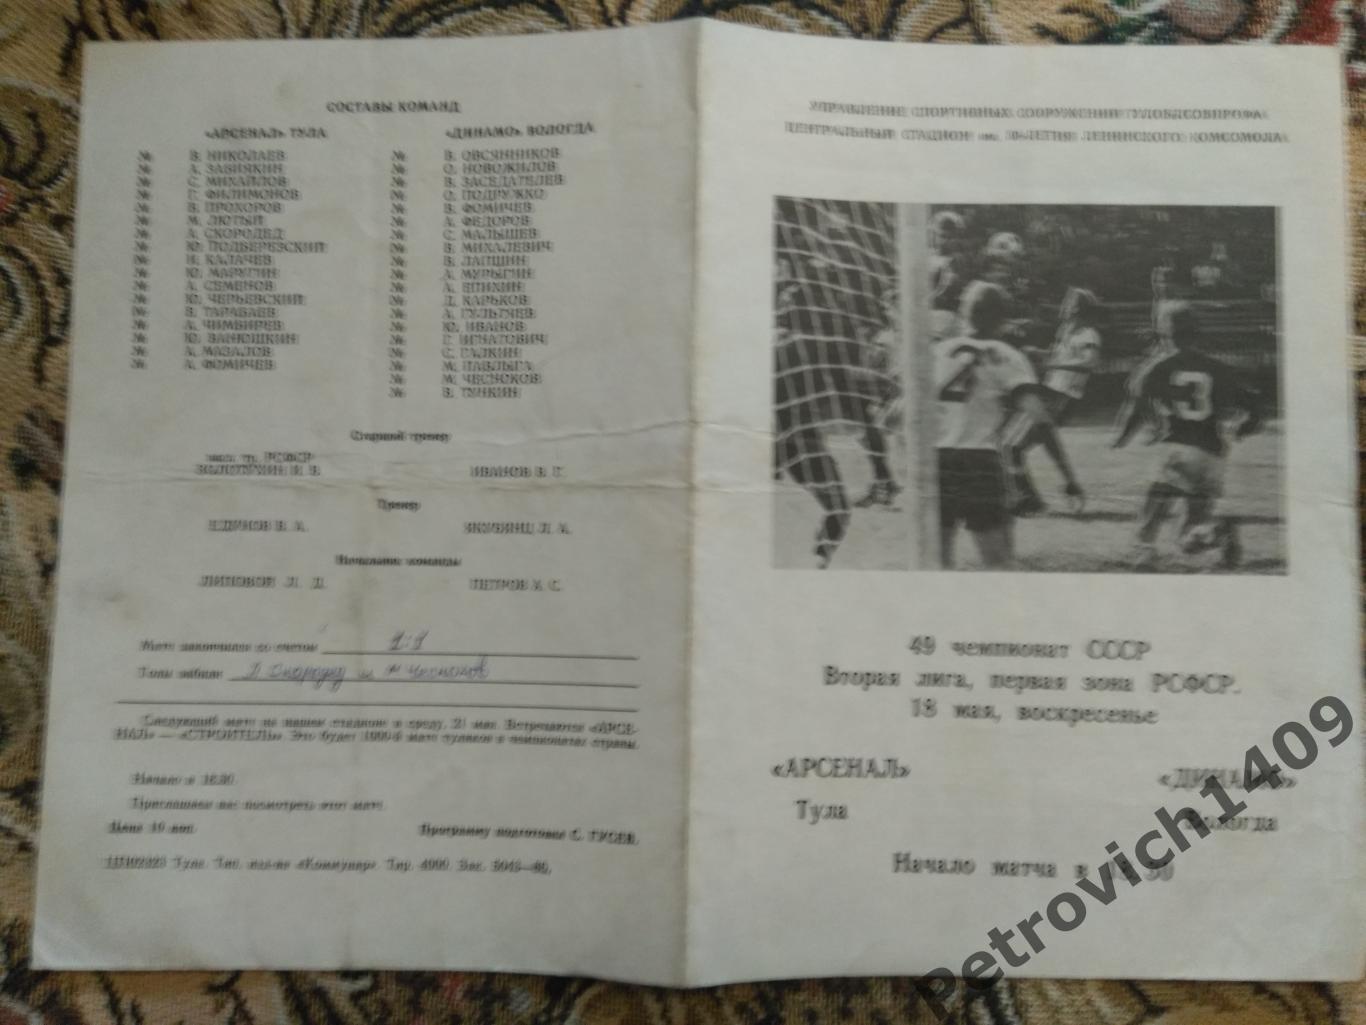 Арсенал Тула - Динамо Вологда 18 мая 1986